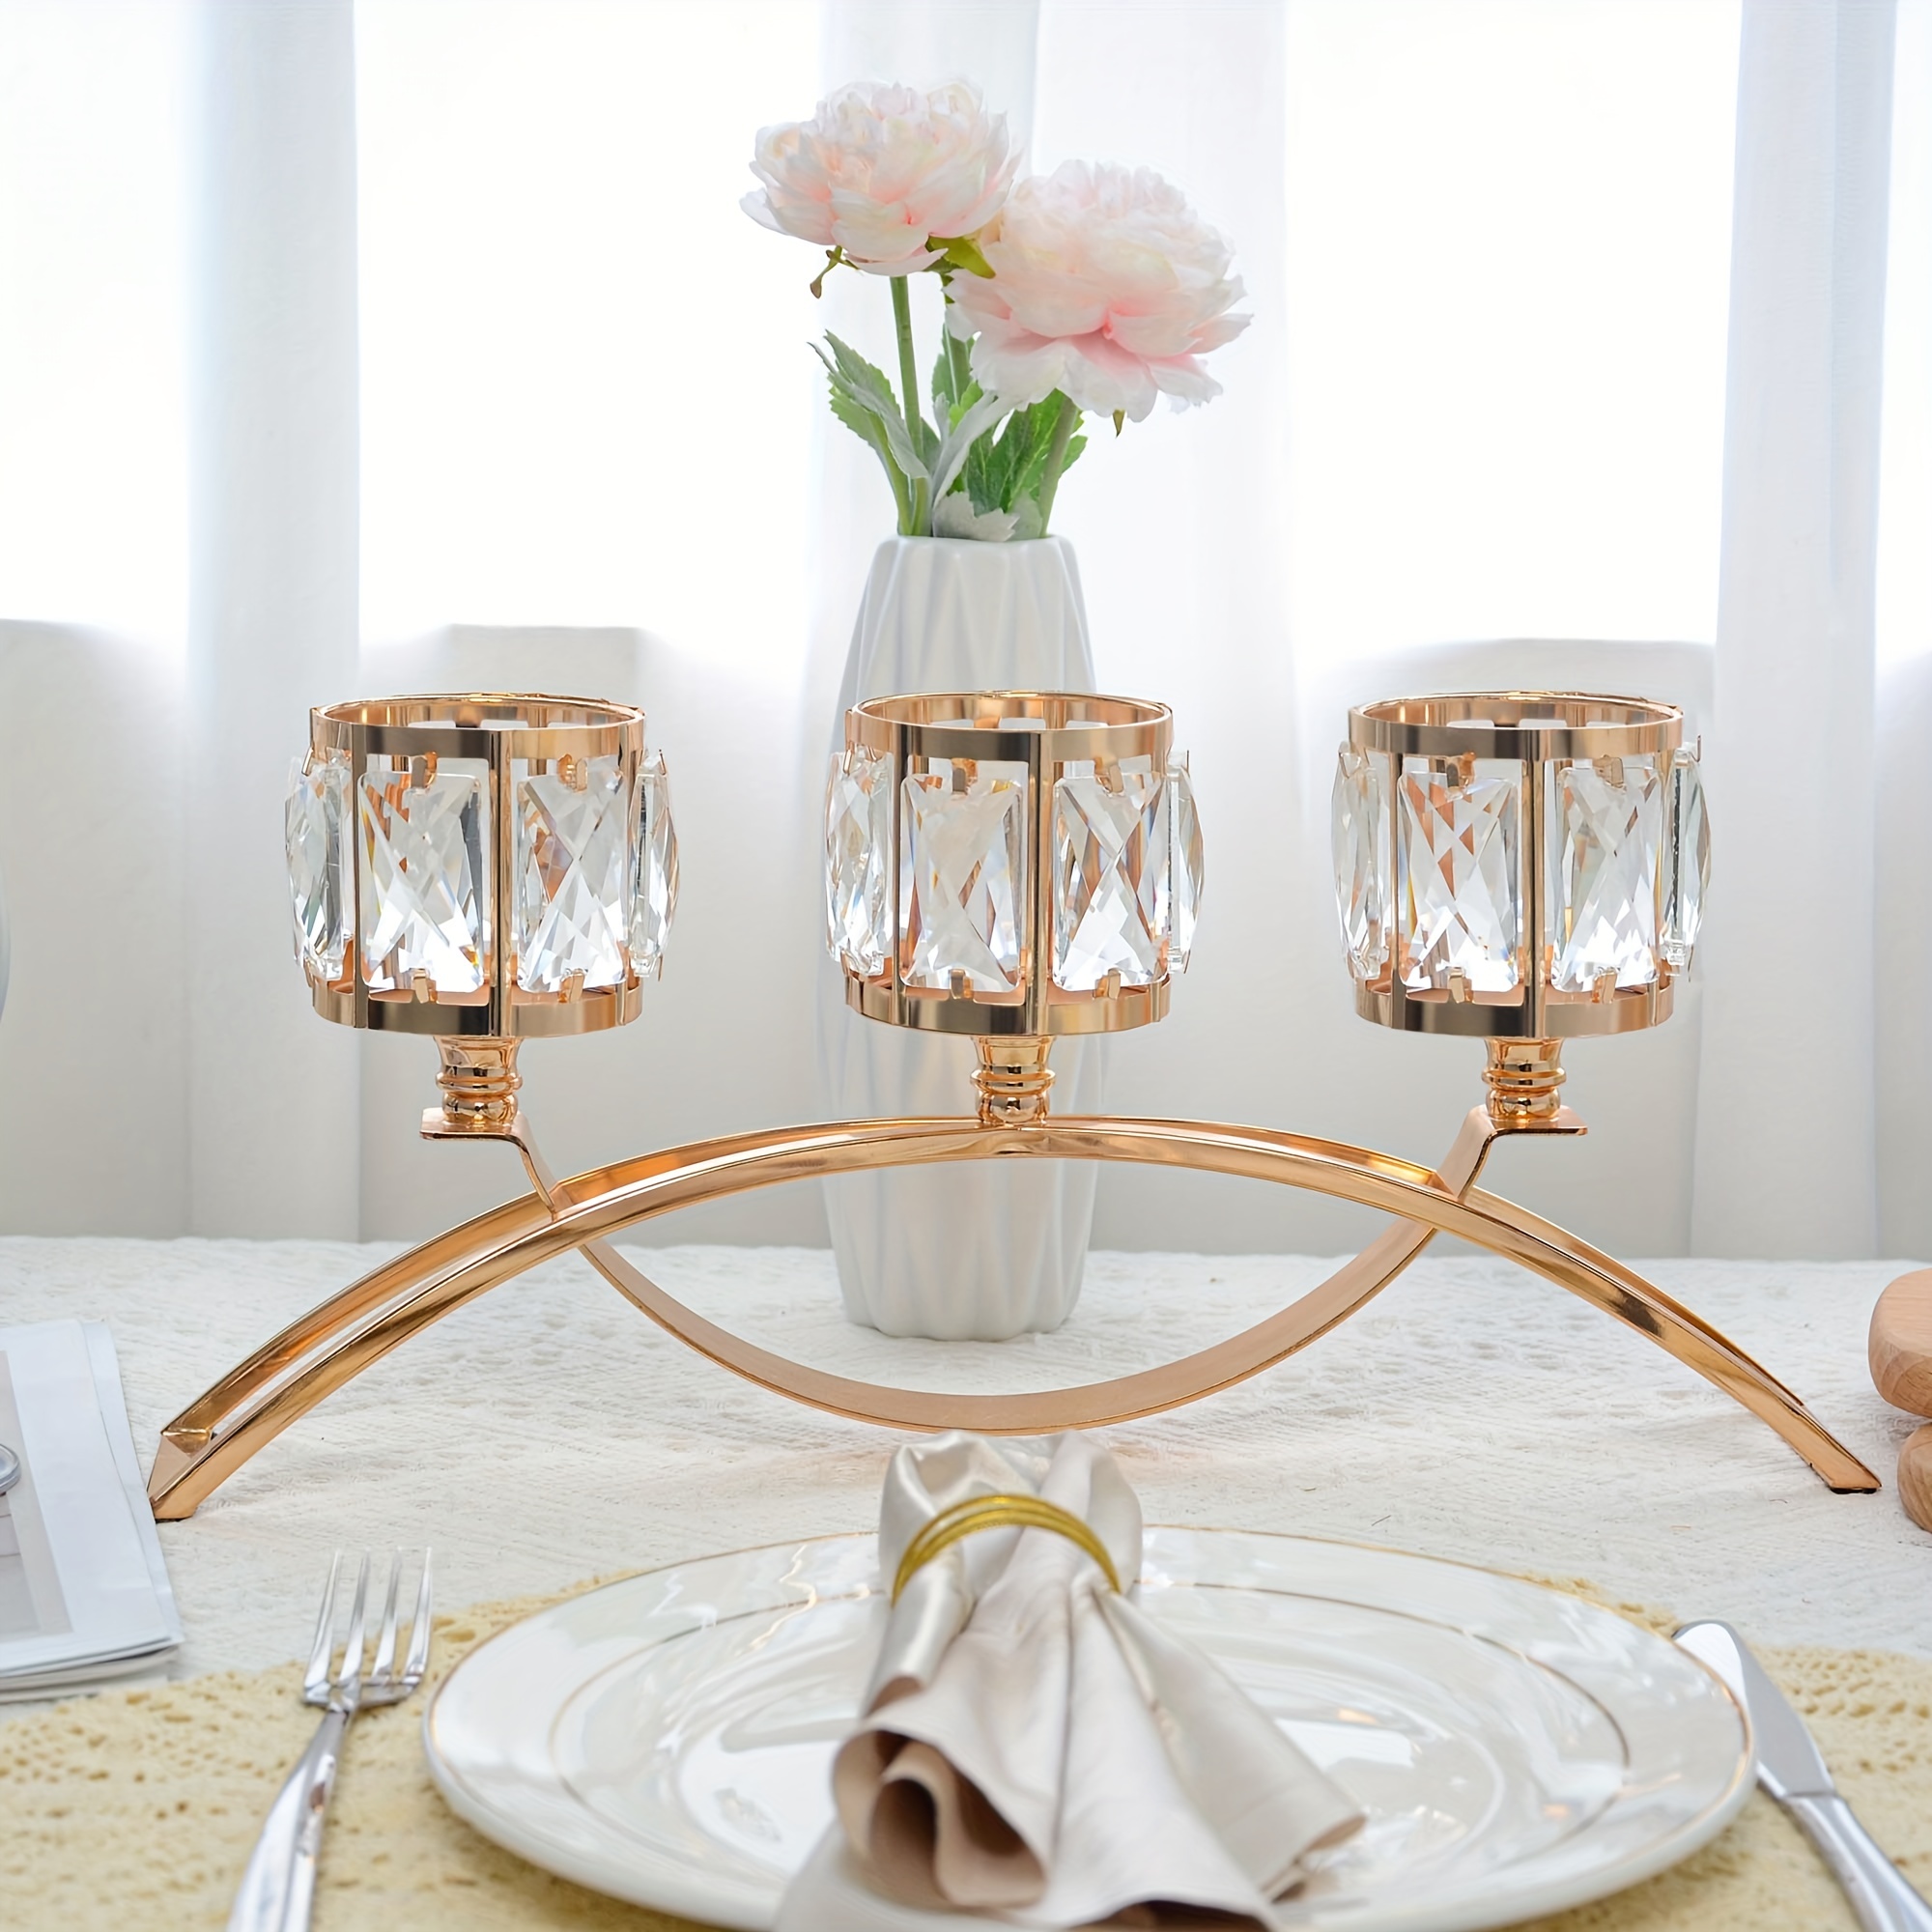 Candelabros decorativos de cristal dorado de 3 brazos, centro de mesa,  centro de mesa, decoración para mesa de comedor, decoración del hogar,  boda